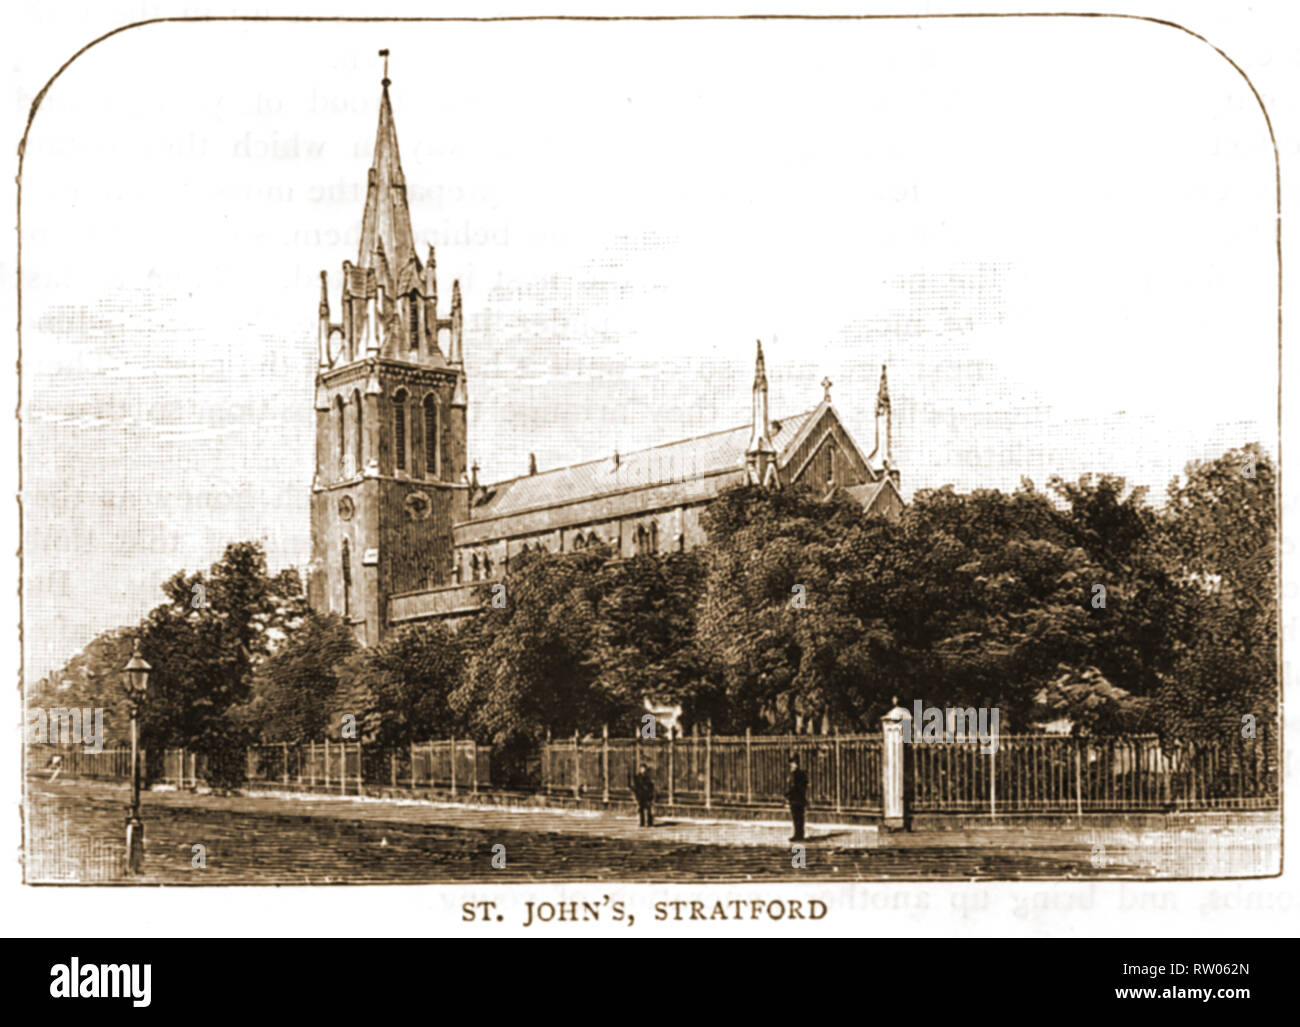 Eine alte Abbildung: die Kirche von St. John's Stratford, England. Es ist eine Zeit Vikar Thomas Stevens war (1841-1920) erste anglikanische Bischof von Bellen, England. Ein Freimaurer, er gemeinsame wurde Grand Kaplan der Vereinigten Großloge von England Stockfoto